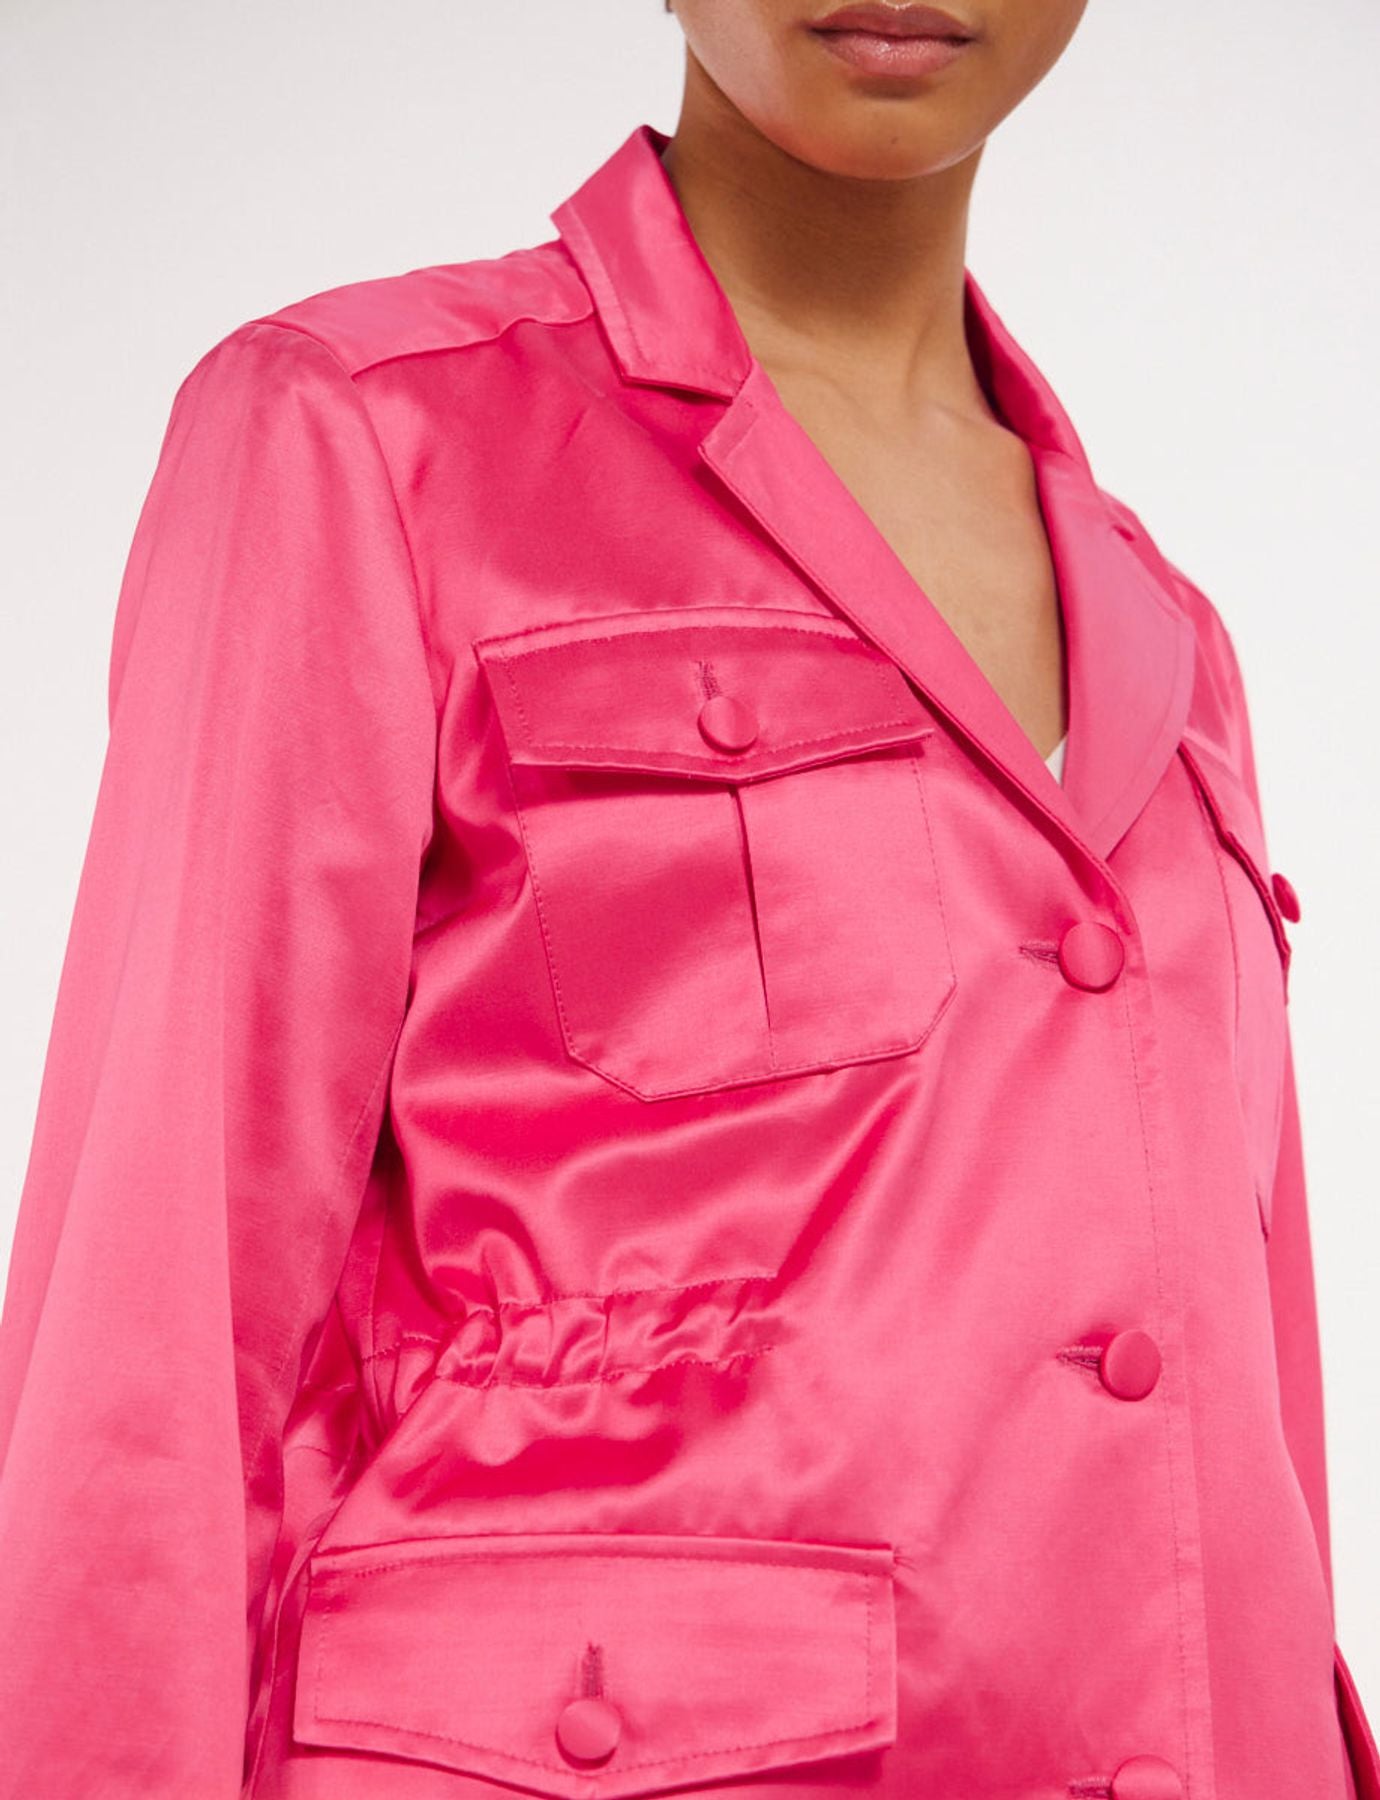 jacket-flipper-pink-satin